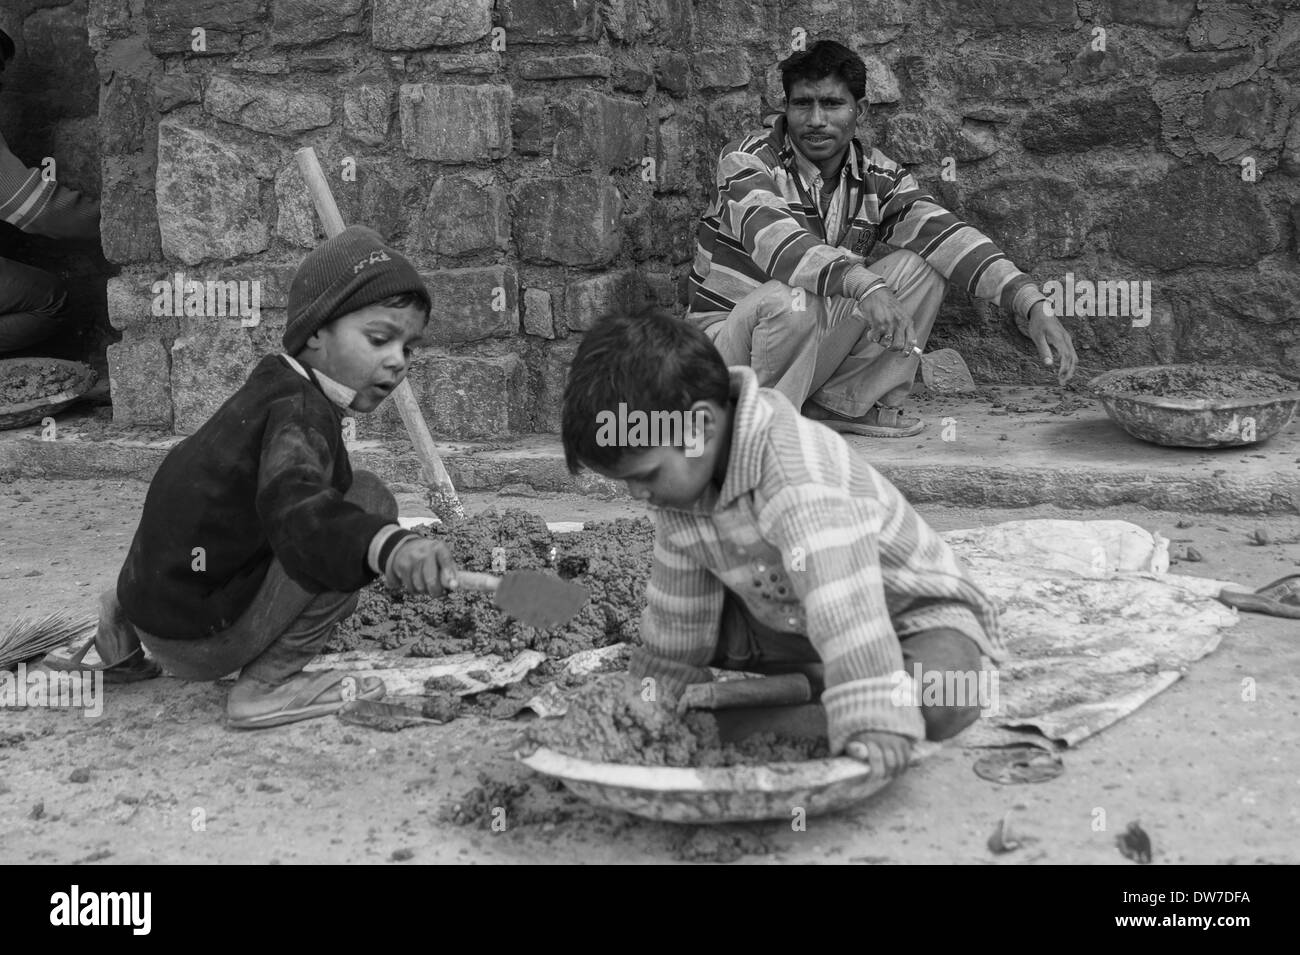 Child labor in India Stock Photo